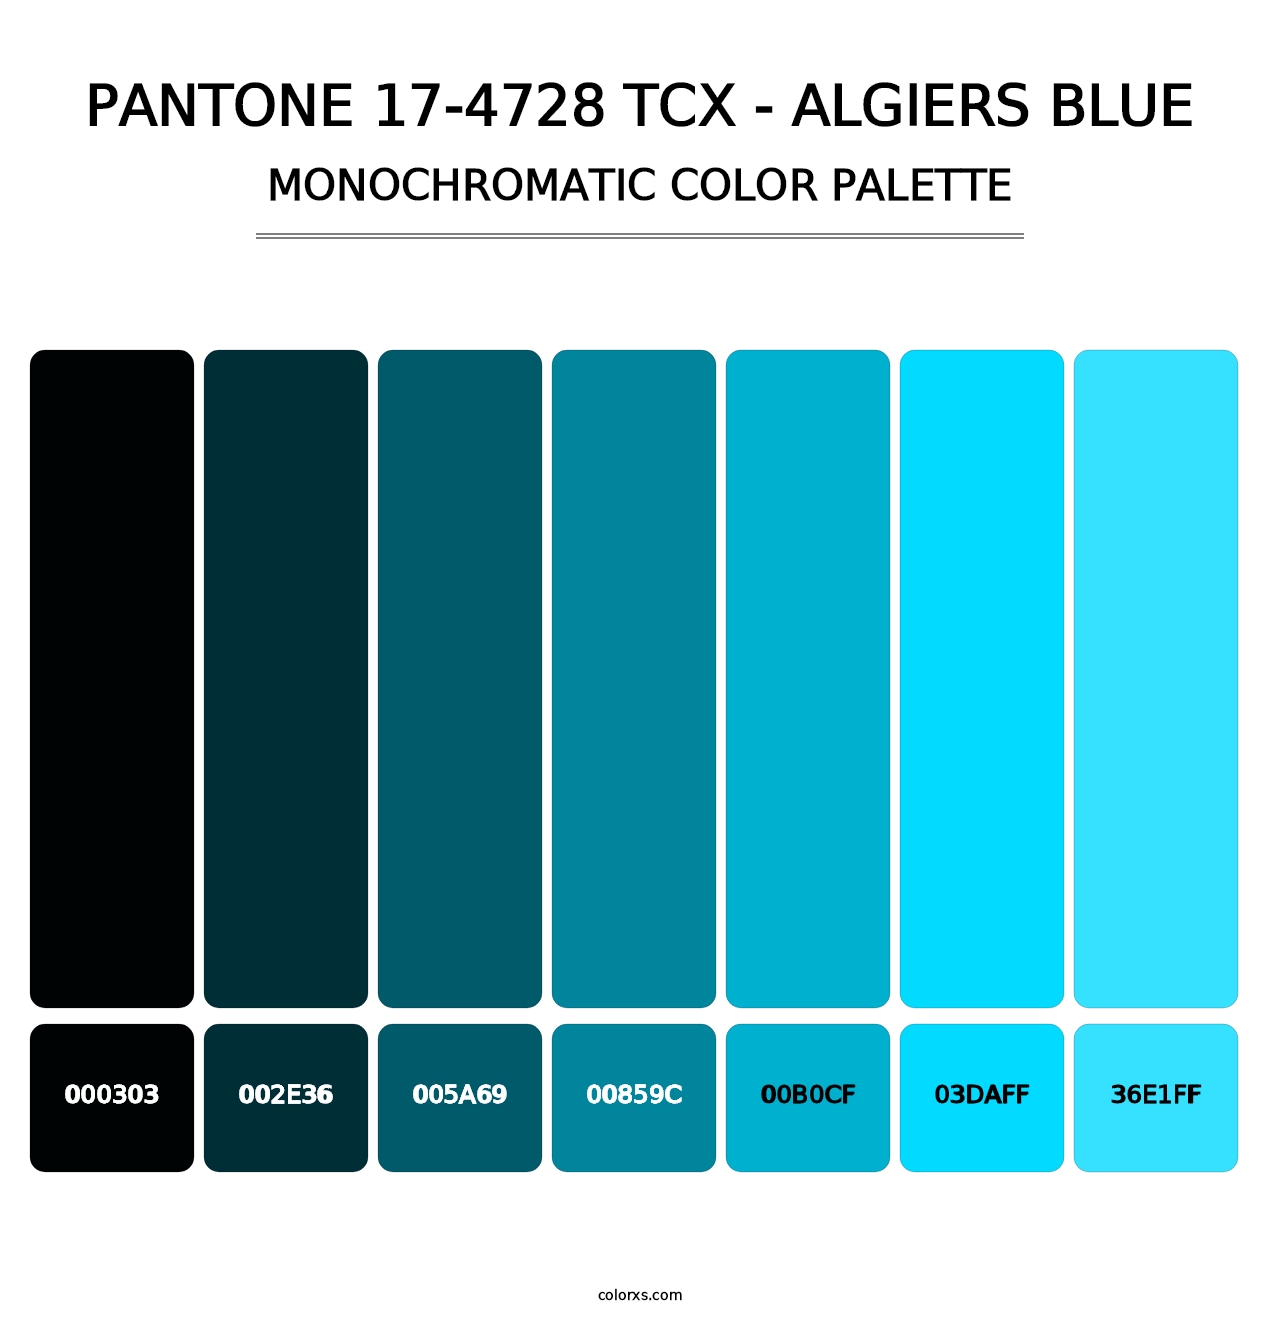 PANTONE 17-4728 TCX - Algiers Blue - Monochromatic Color Palette